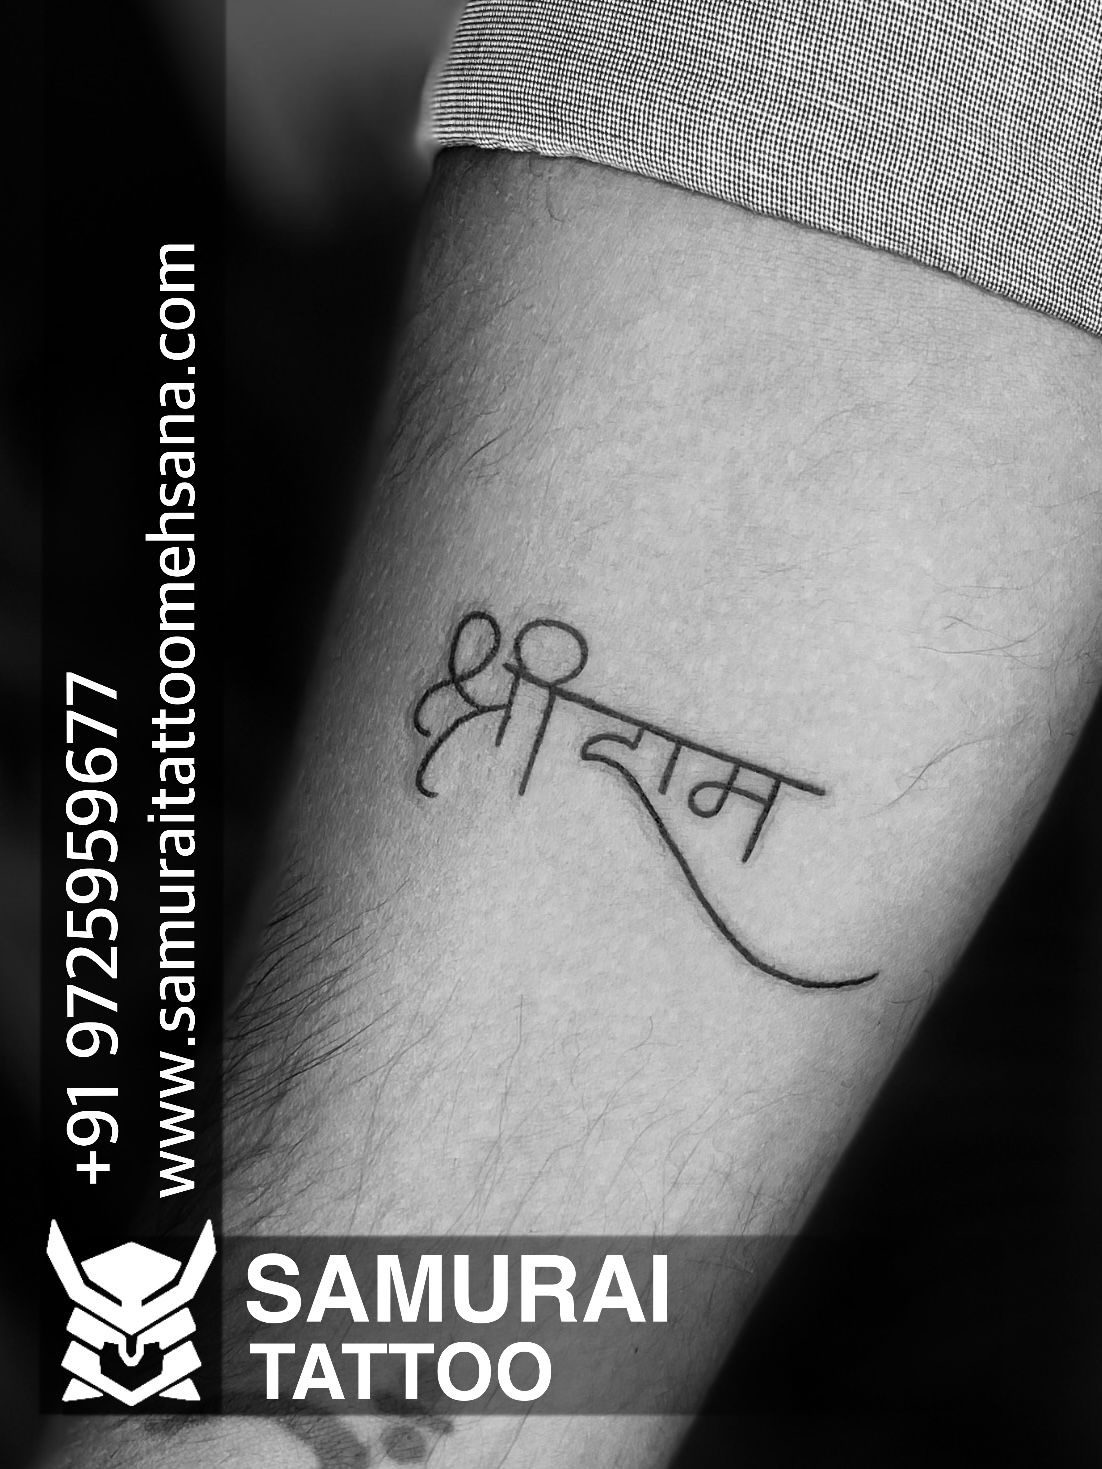 Ram tattoo |Shree ram tattoo |Ram tattoo ideas |Lord ram tattoo | Ram tattoo,  Small tattoos, Hand tattoos